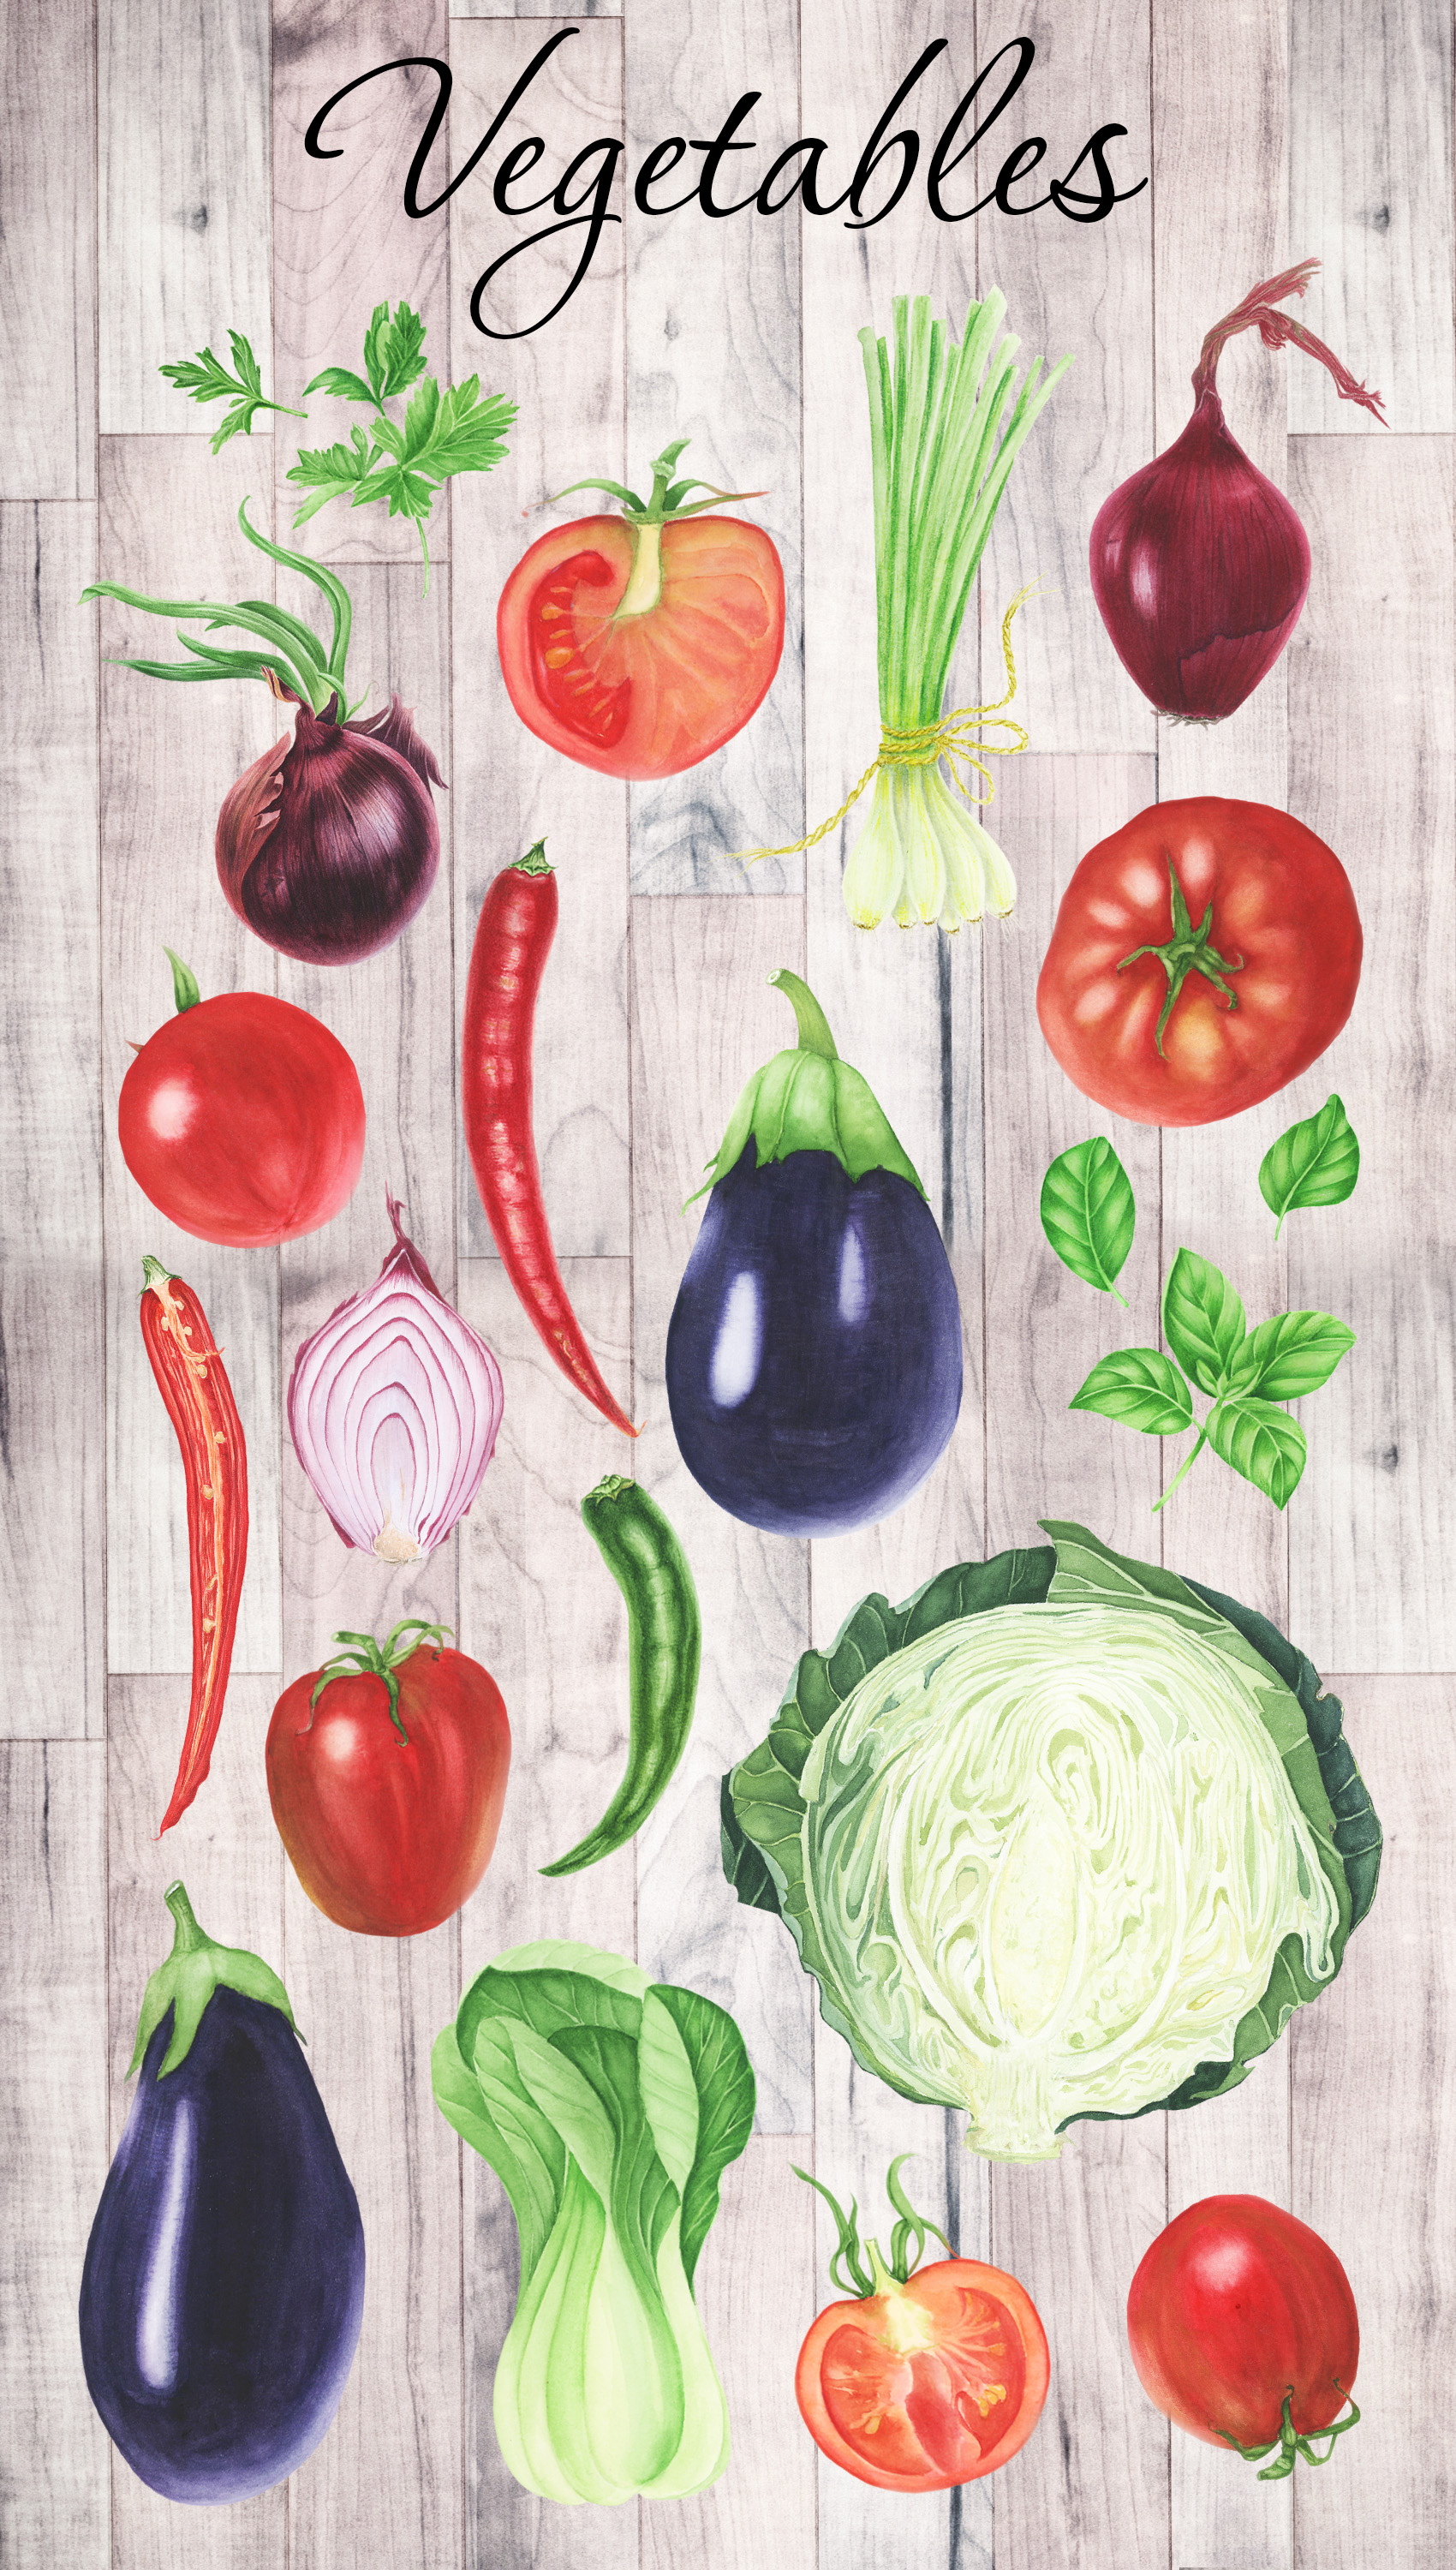 21个水彩插图的蔬菜PNG剪贴画素材 Watercolor